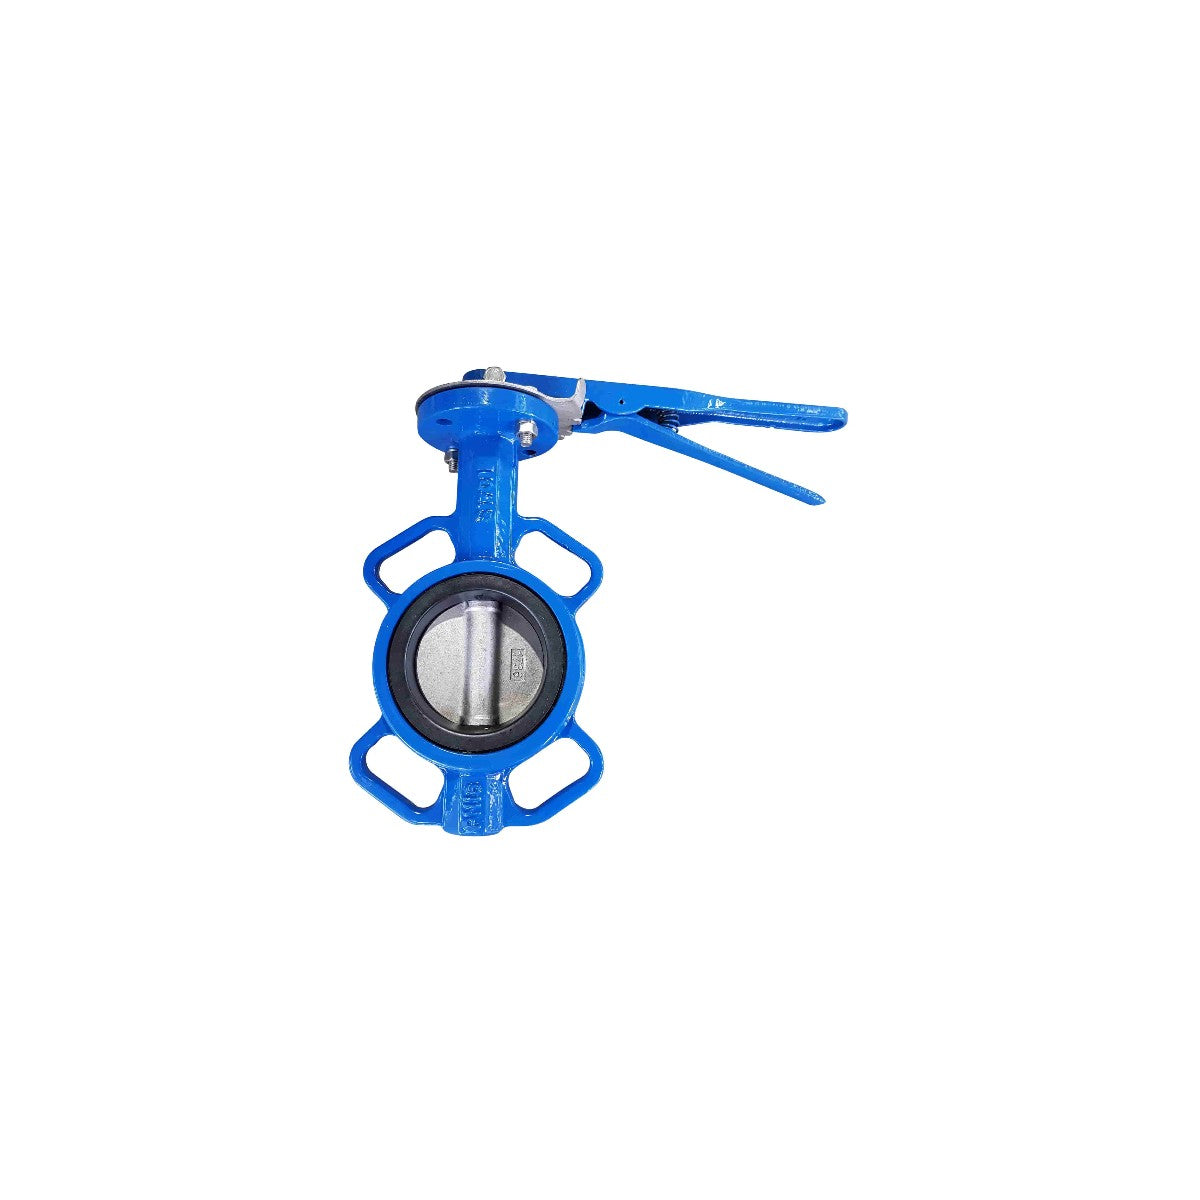 Blue butterfly valve